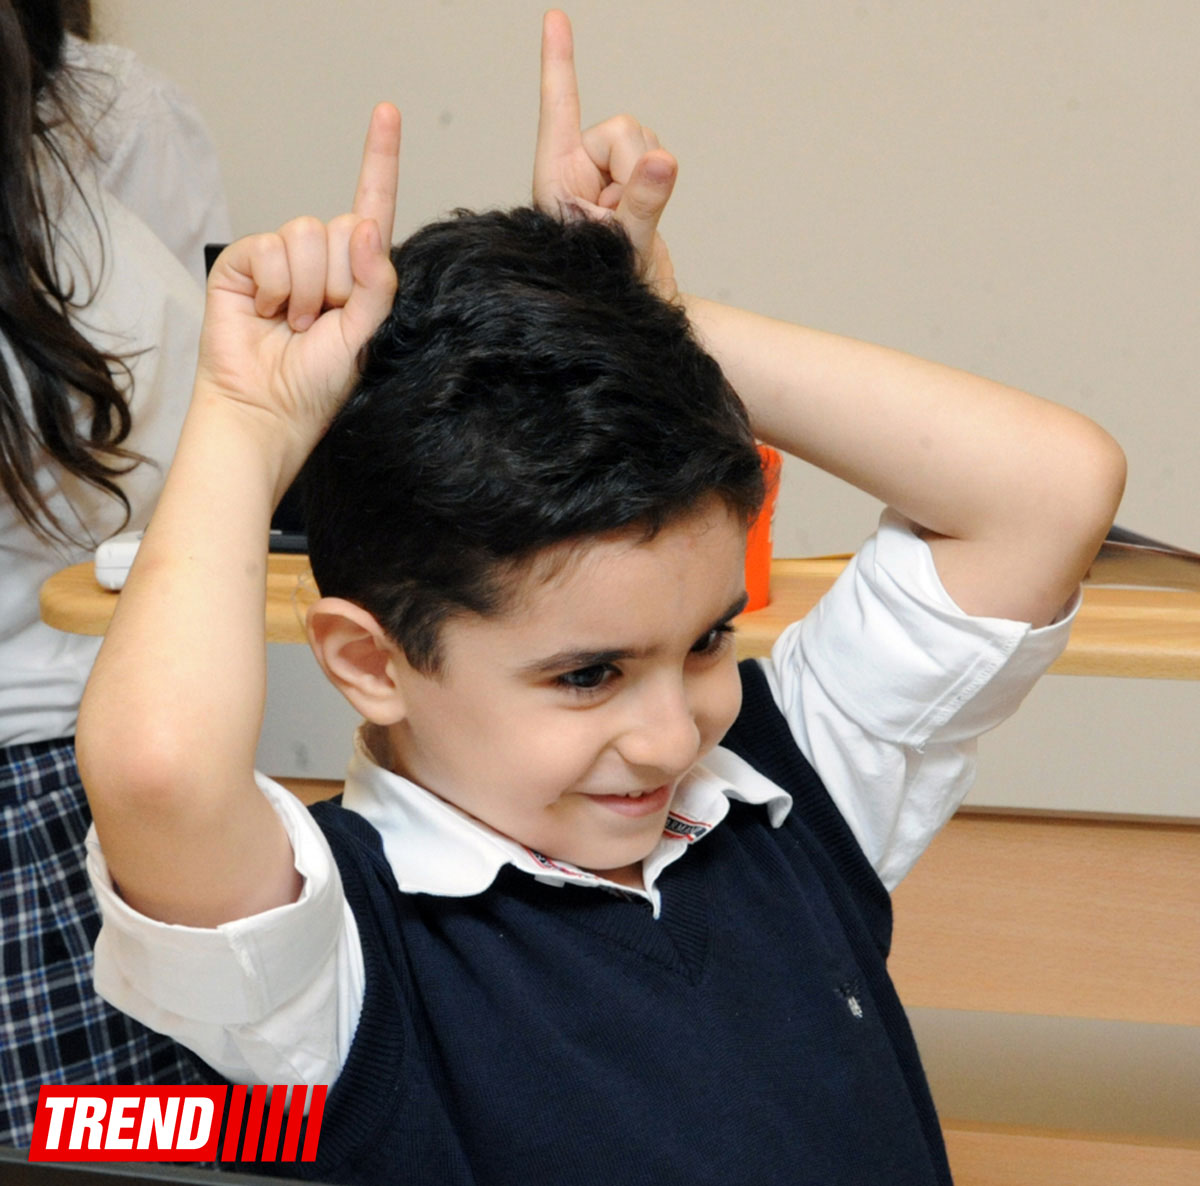 В Азербайджане впервые созданы классы здорового образования (ФОТО)